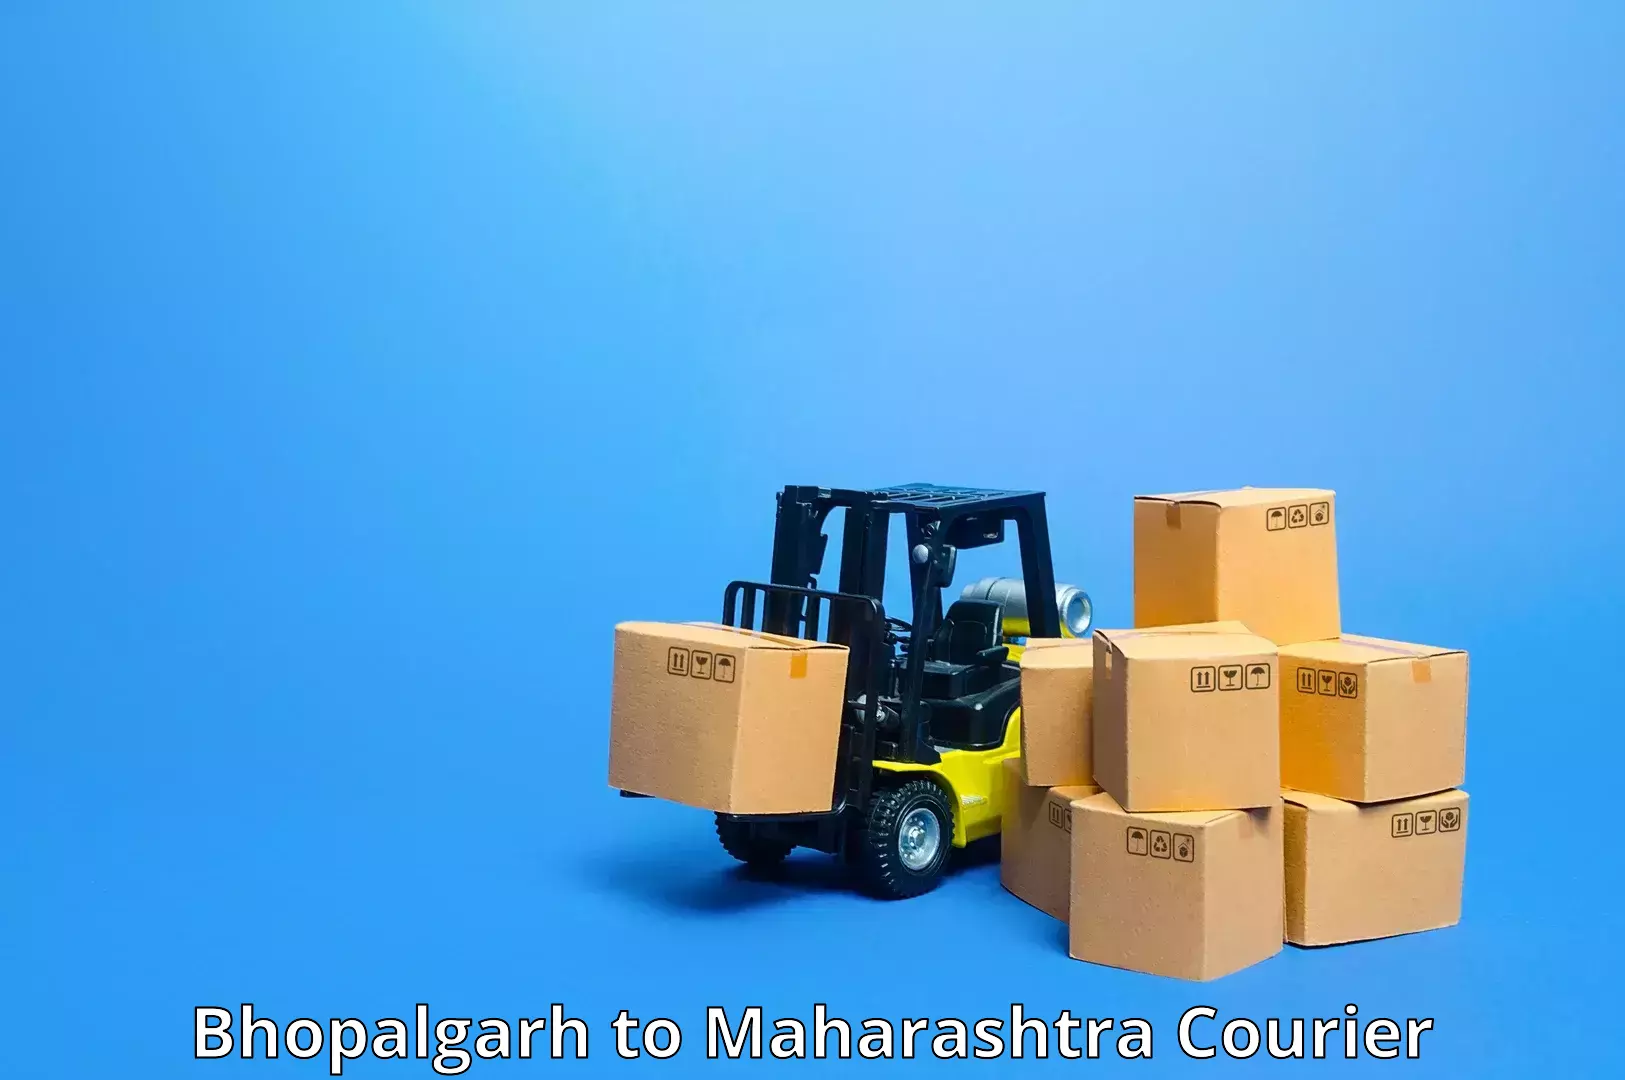 Express shipping Bhopalgarh to Soegaon